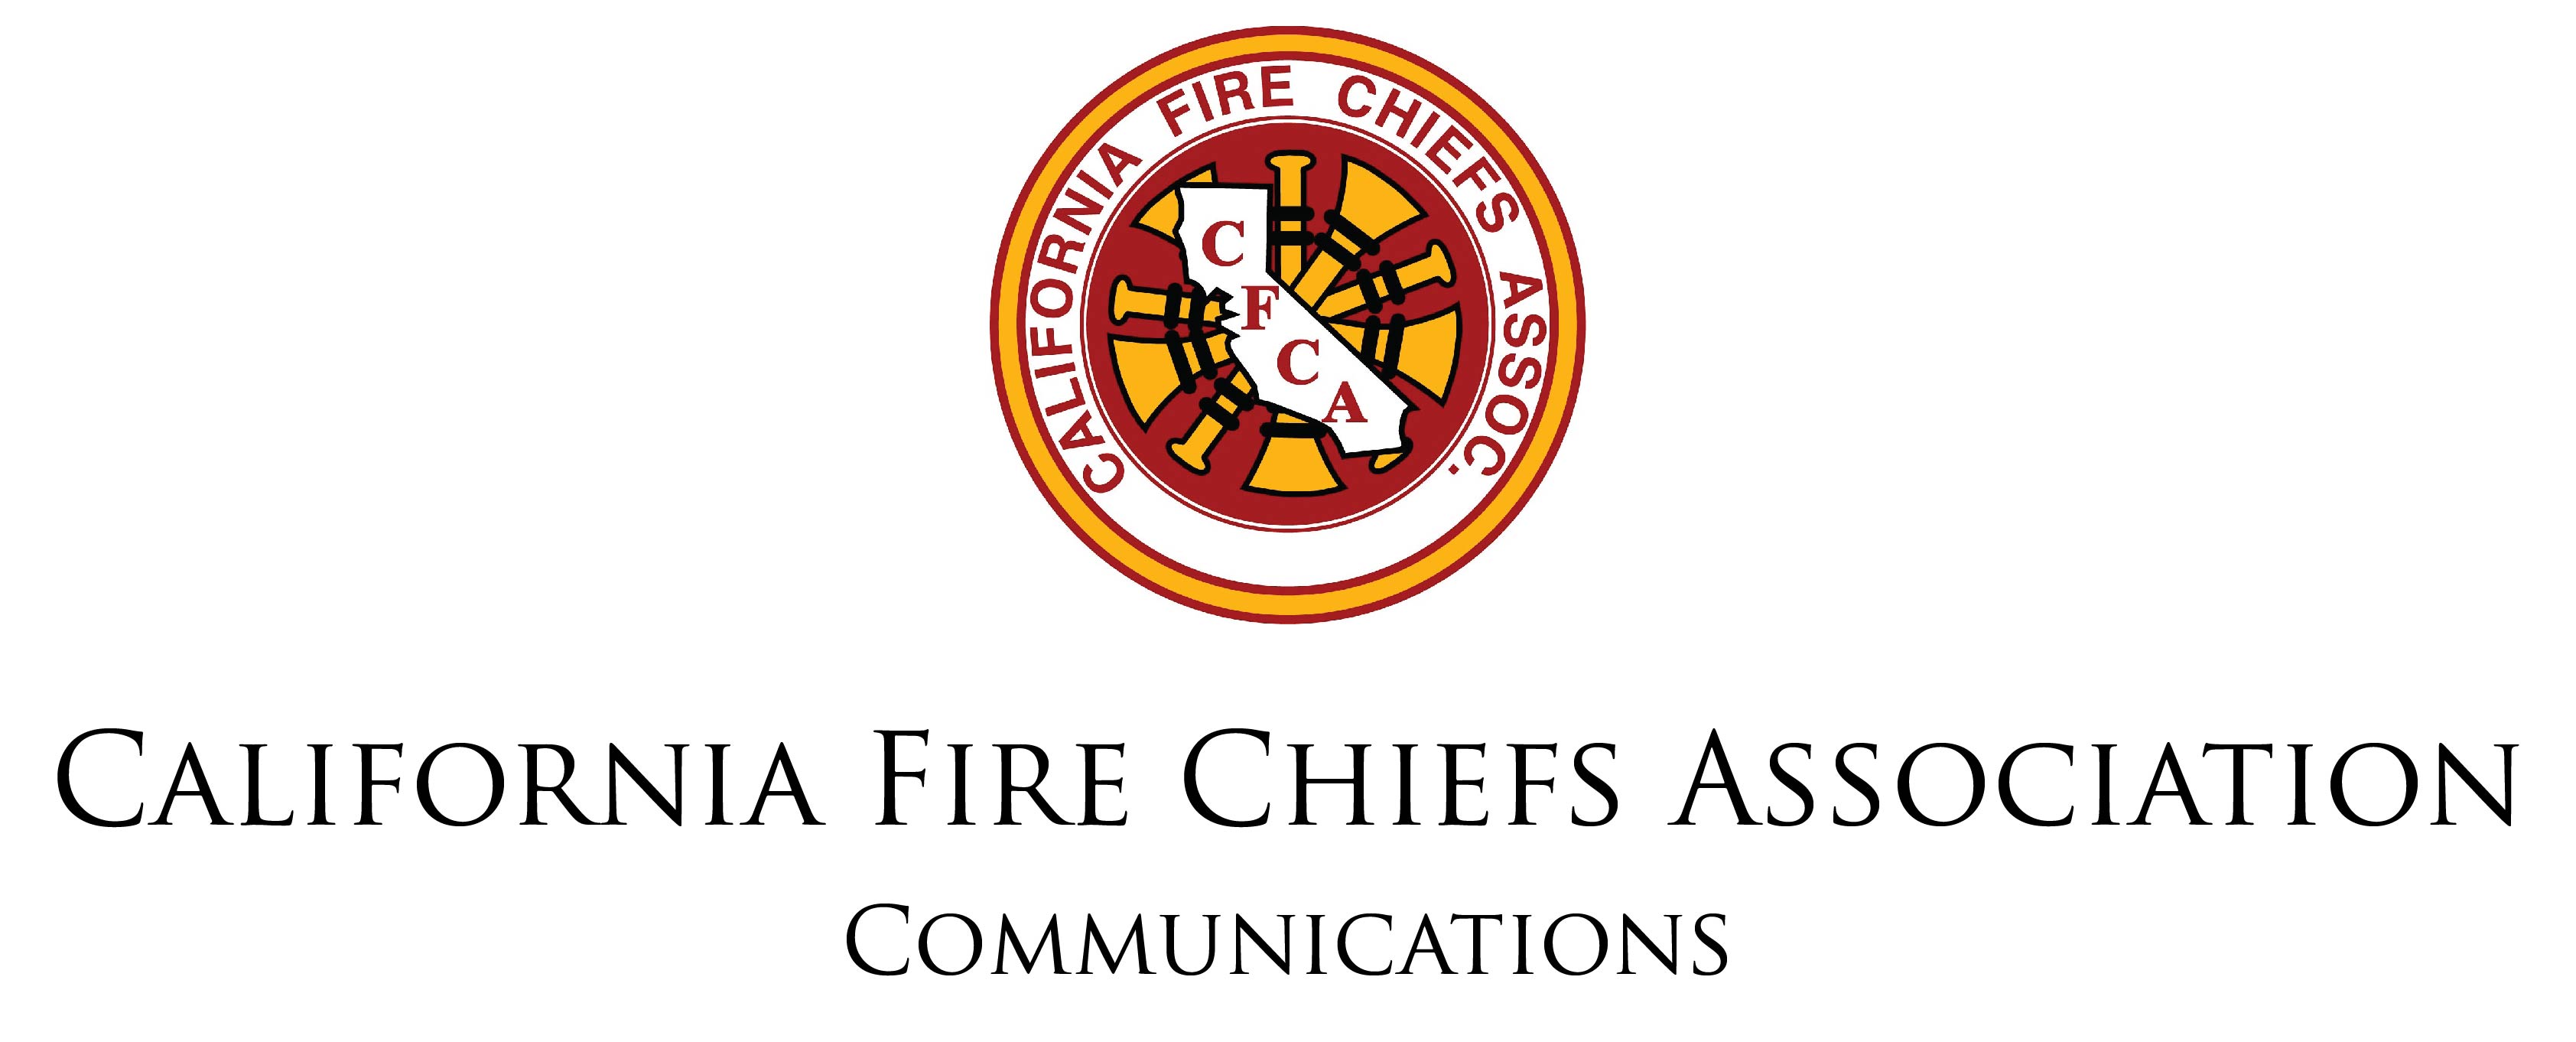 California Fire Chiefs Association - Communications